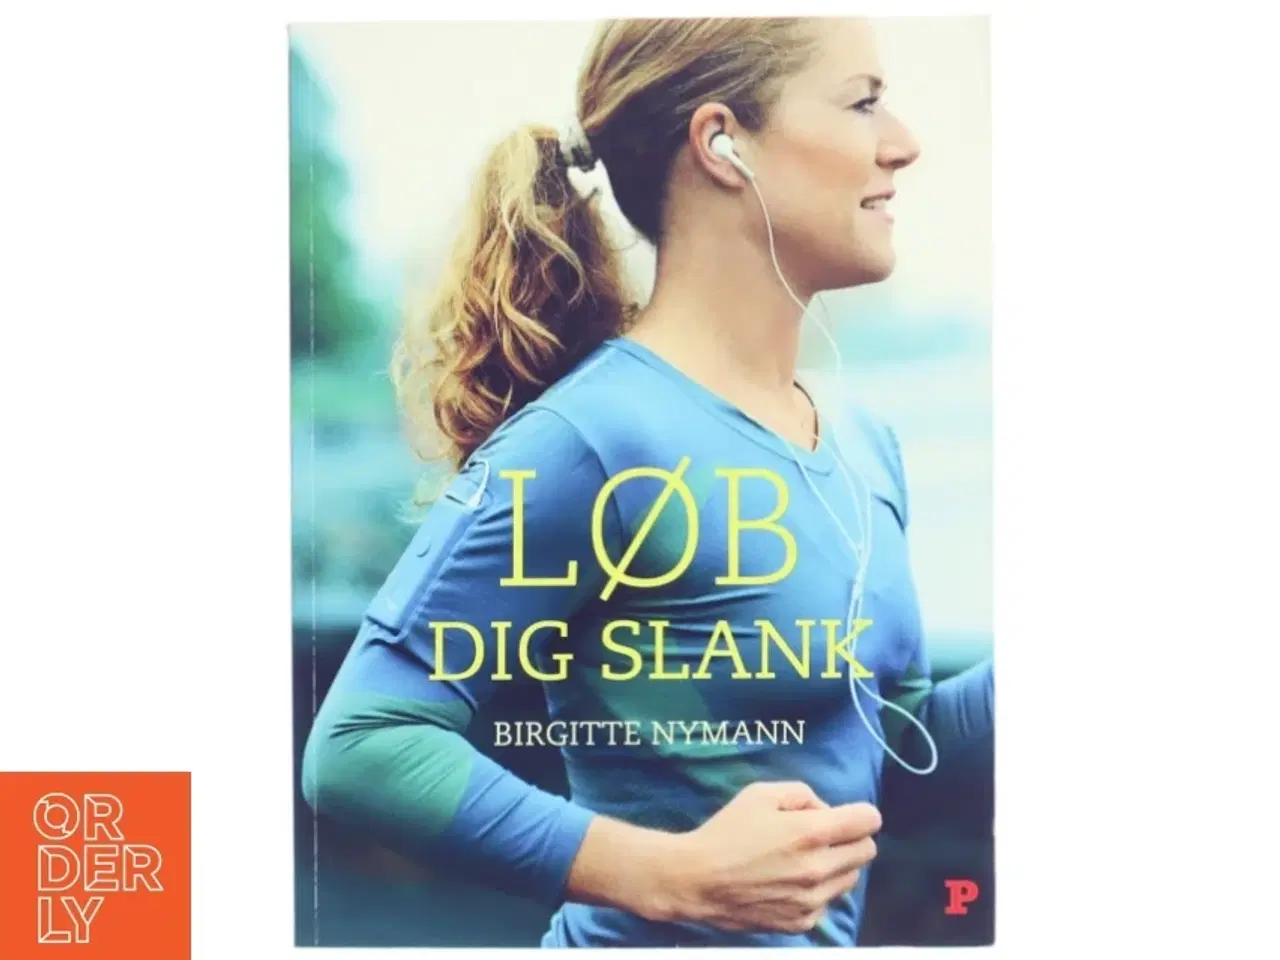 Billede 1 - 'Løb dig slank' af Birgitte Nyman (bog) fra Politikens Forlag